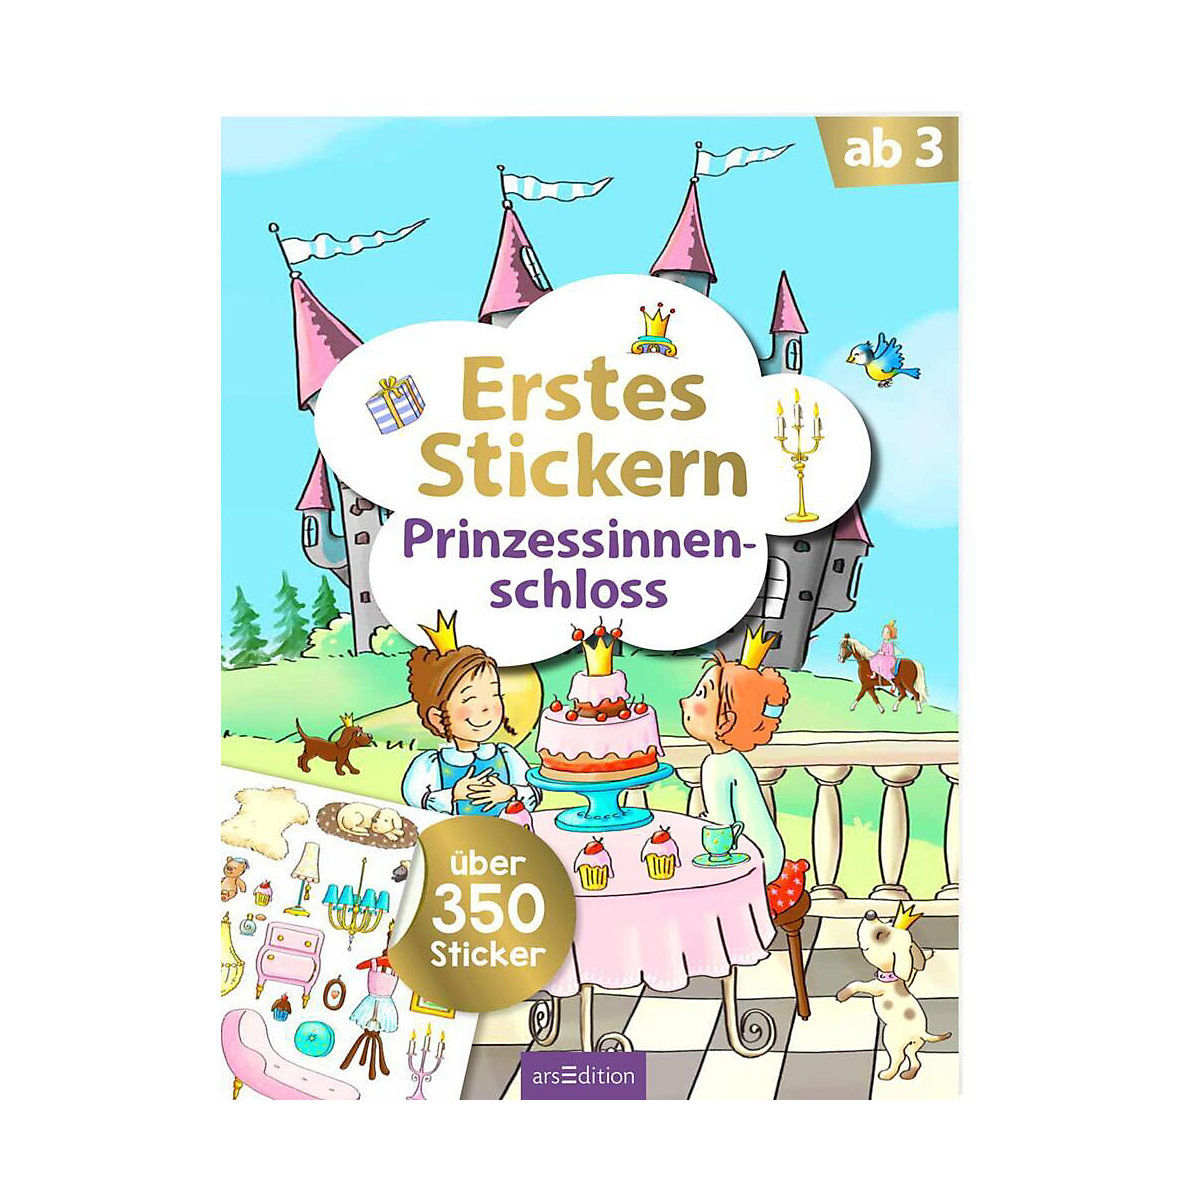 arsEdition Verlag Erstes Stickern Prinzessinnenschloss